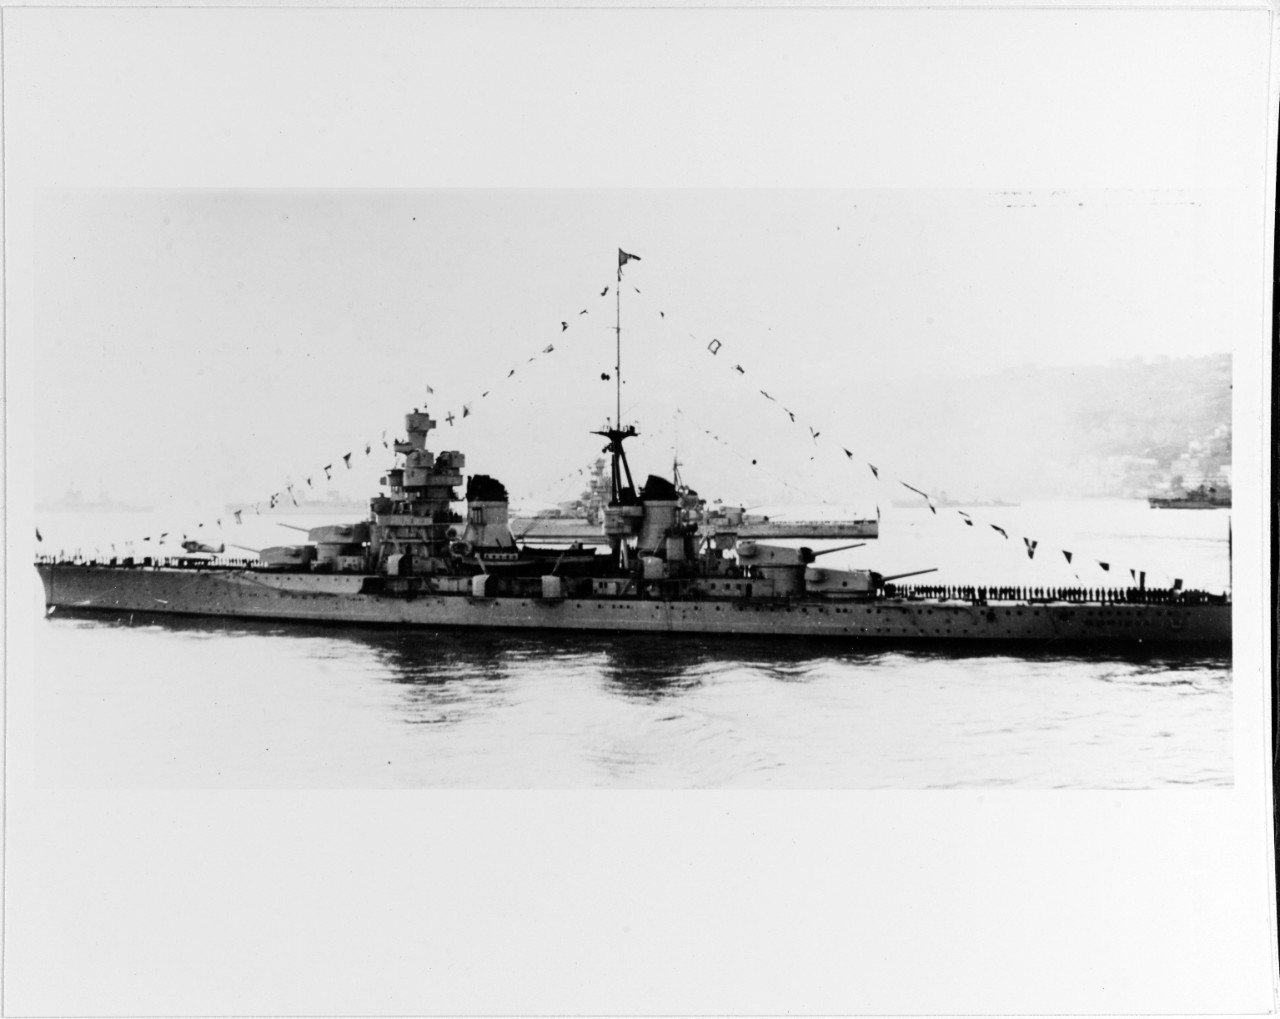 GORIZIA (Italian Heavy Cruiser, 1930-44)